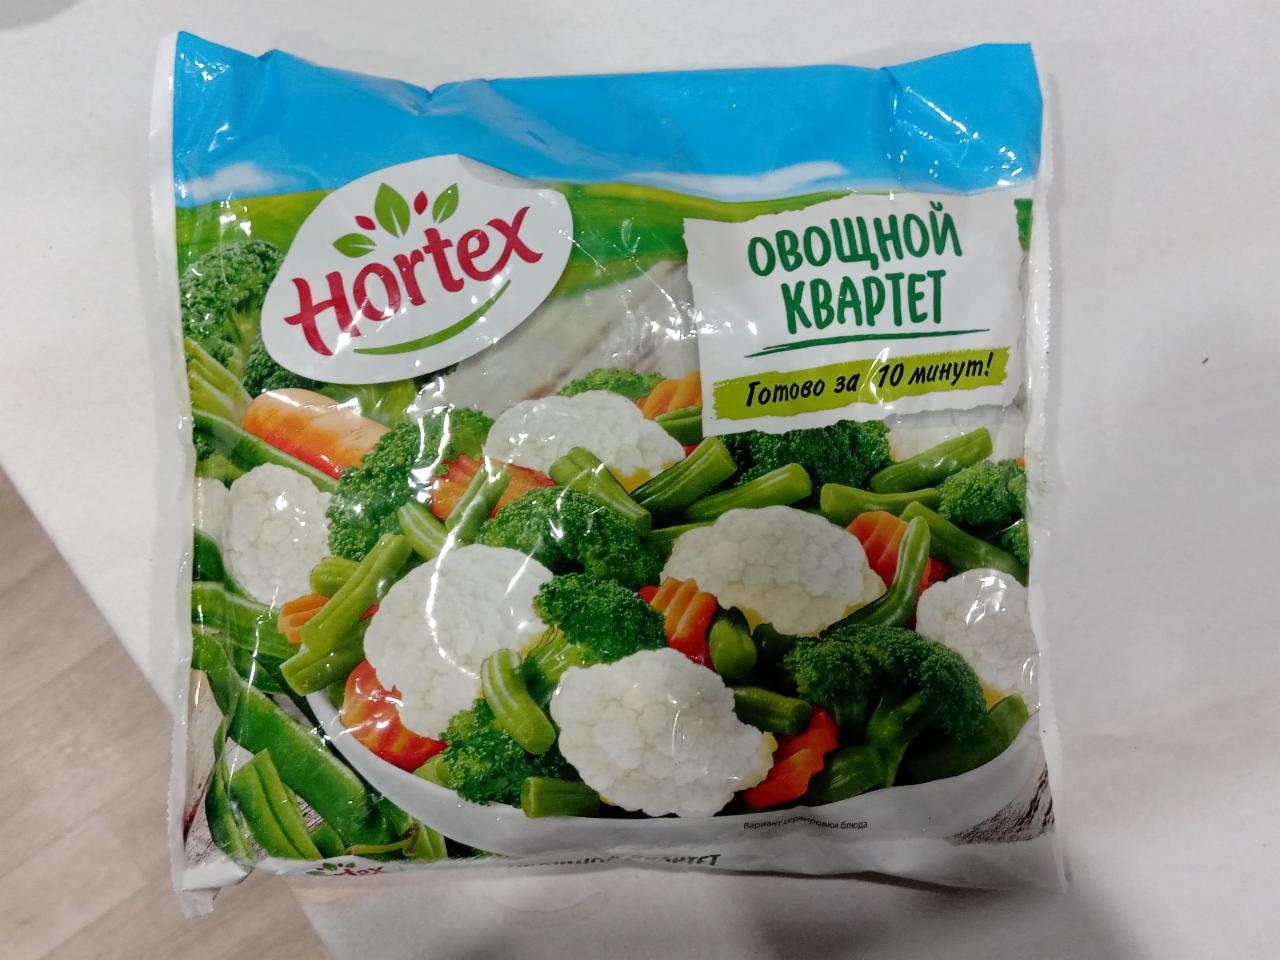 Фото - Замороженные овощи Овощной квартет Hortex